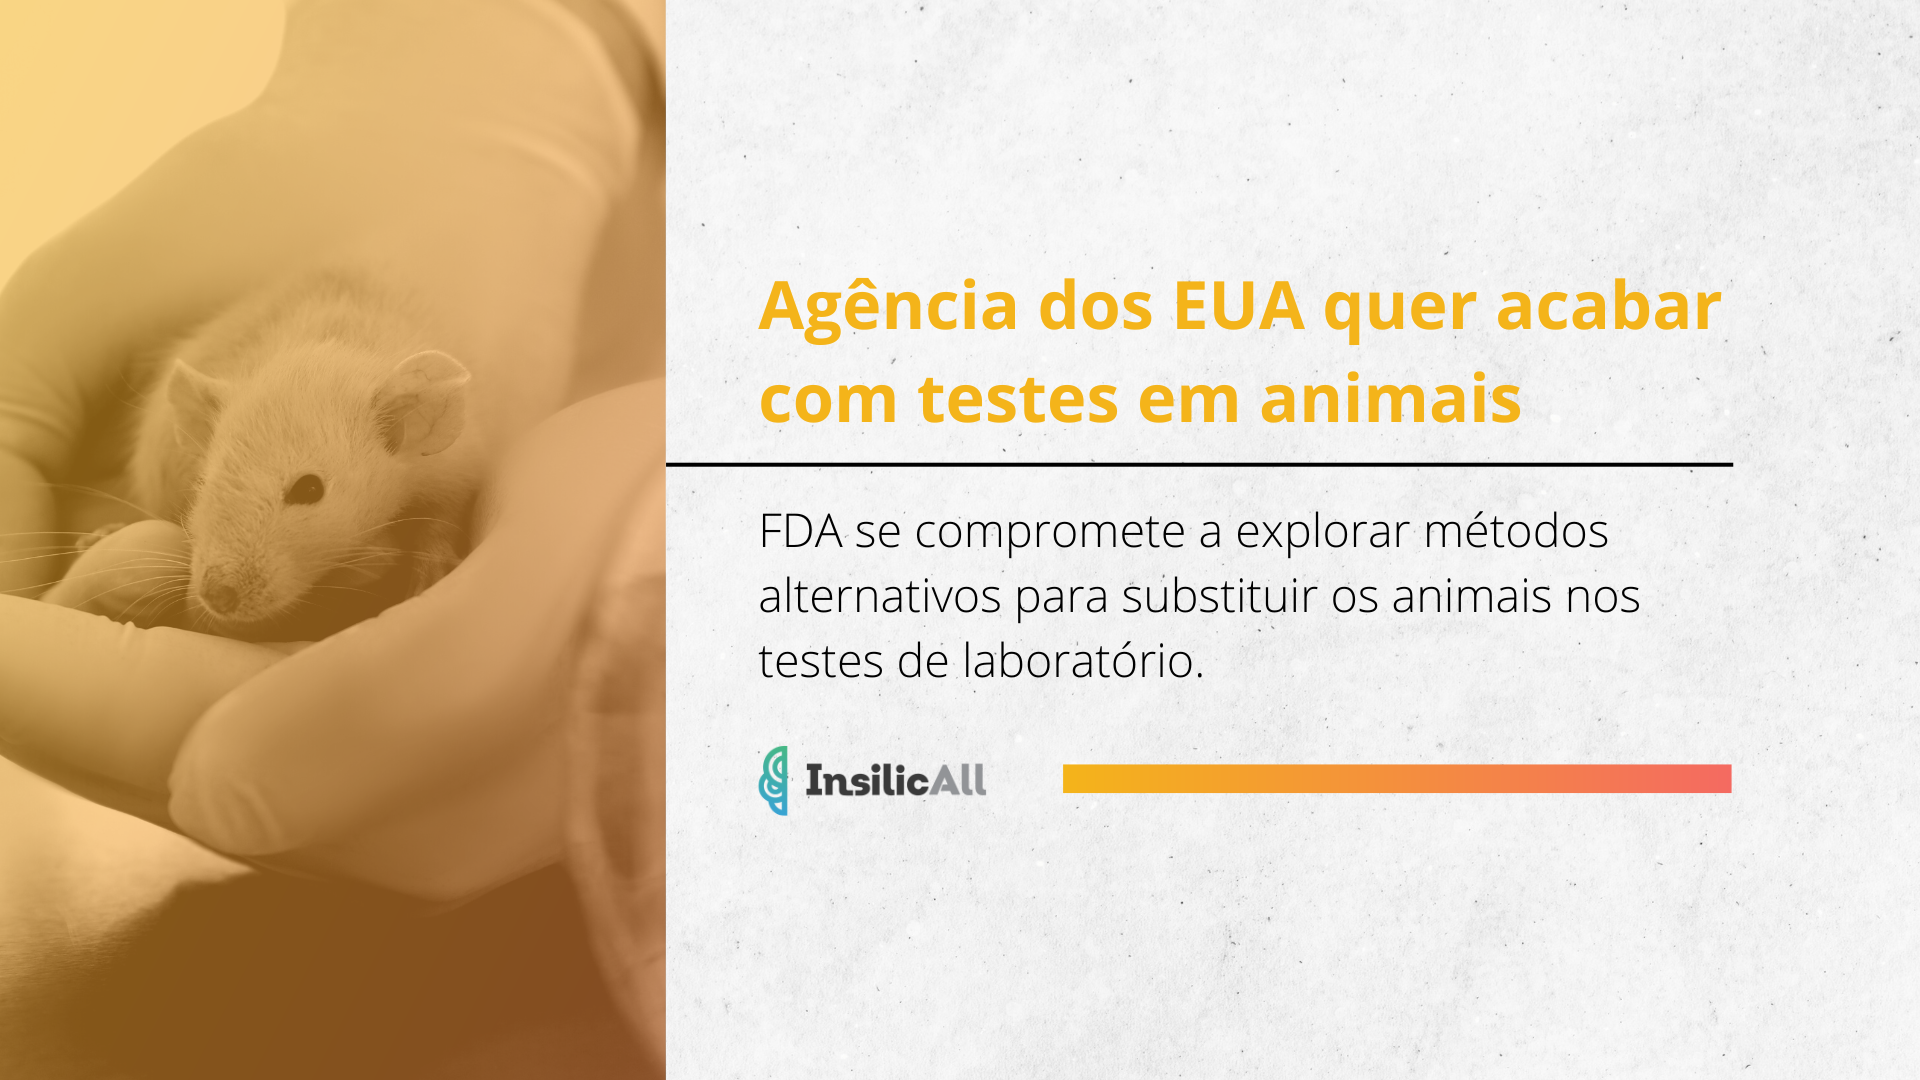 Agência dos EUA quer encerrar testes em animais